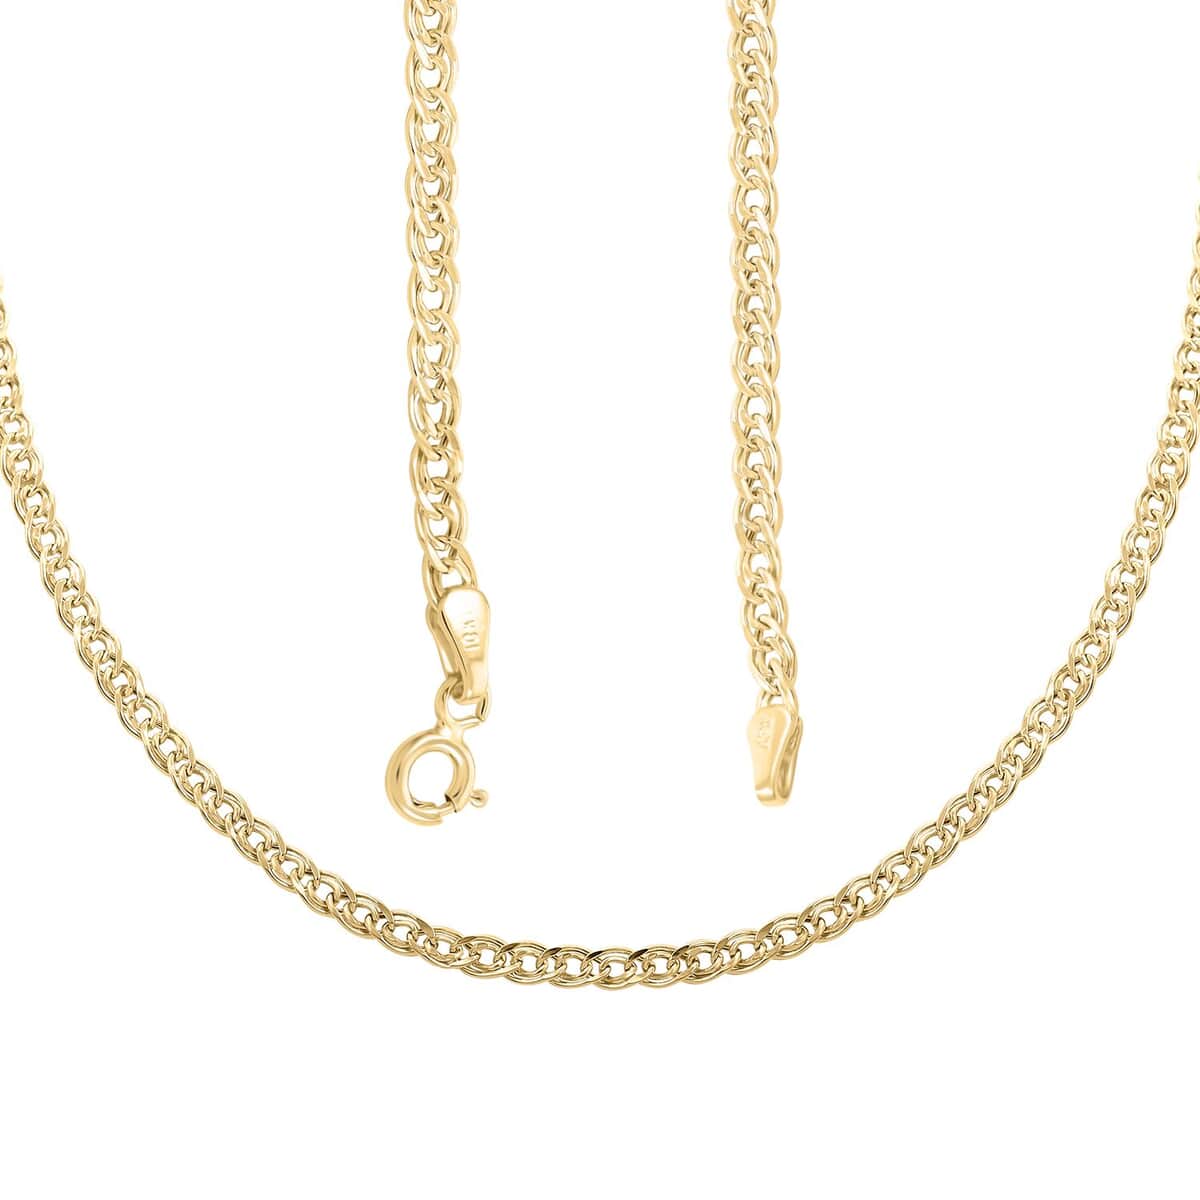 Buy Intreccio Spirali Italian 10K Yellow Gold Chain Necklace 18 Inches ...